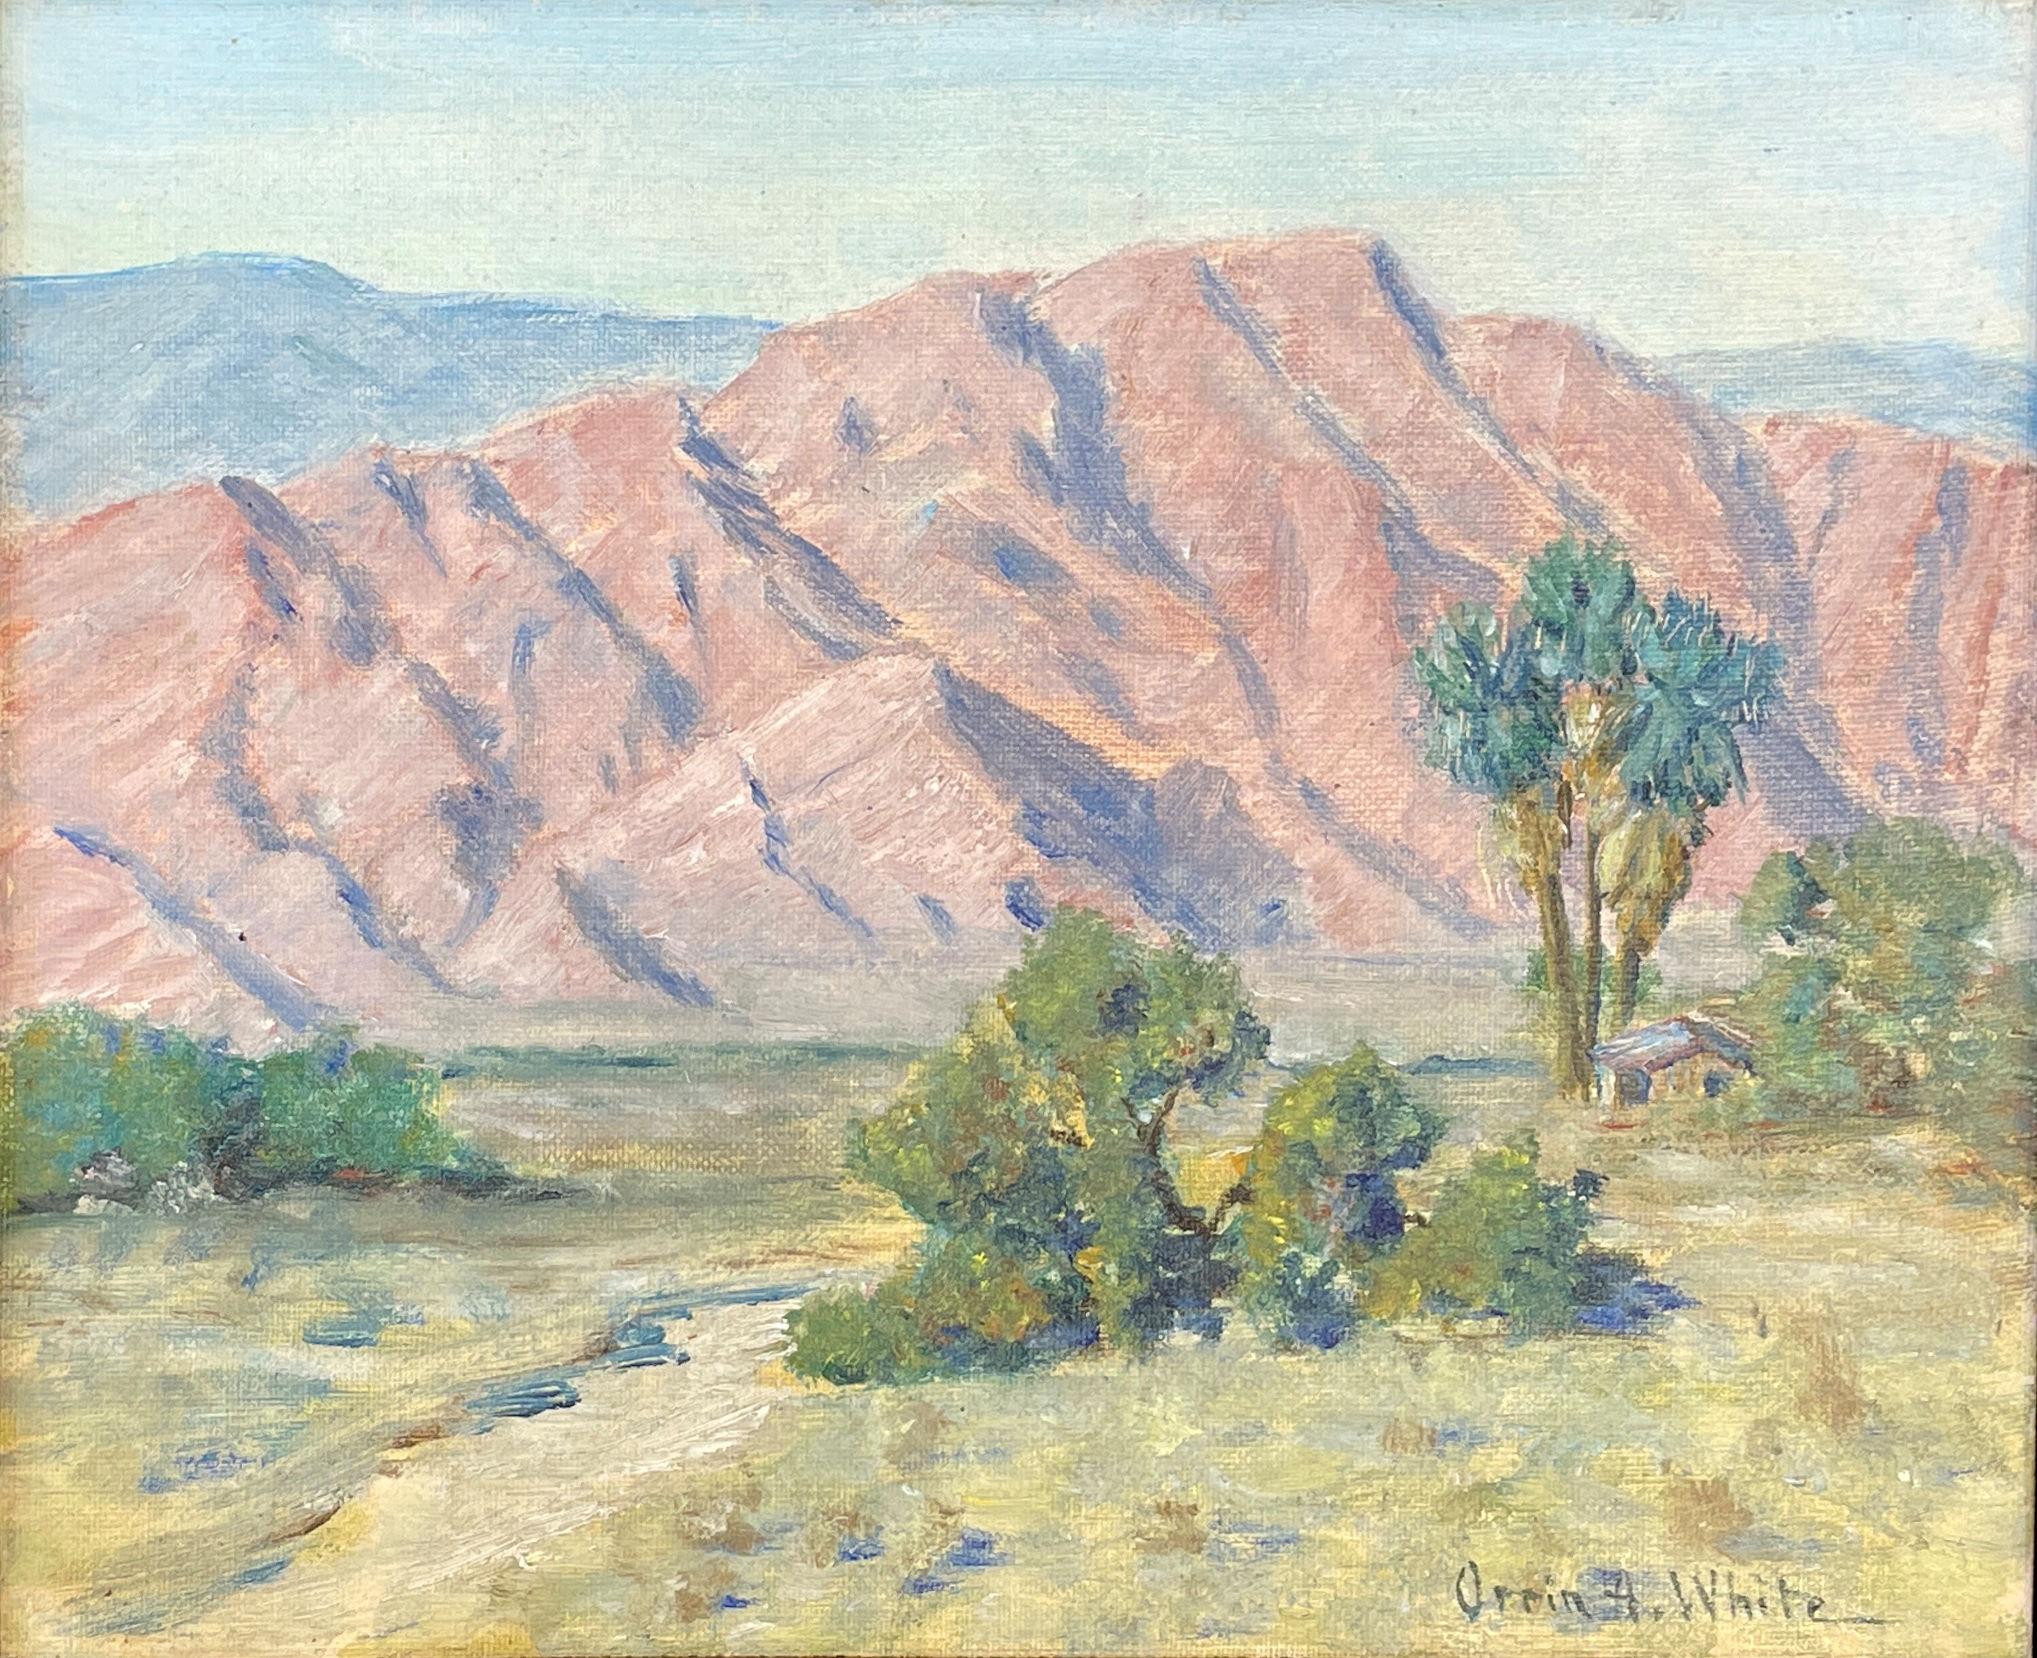 Landscape Painting Orrin A. White - « Californie Mountains », blanc d'Orrin, impressionnisme, paysage du désert du sud-ouest